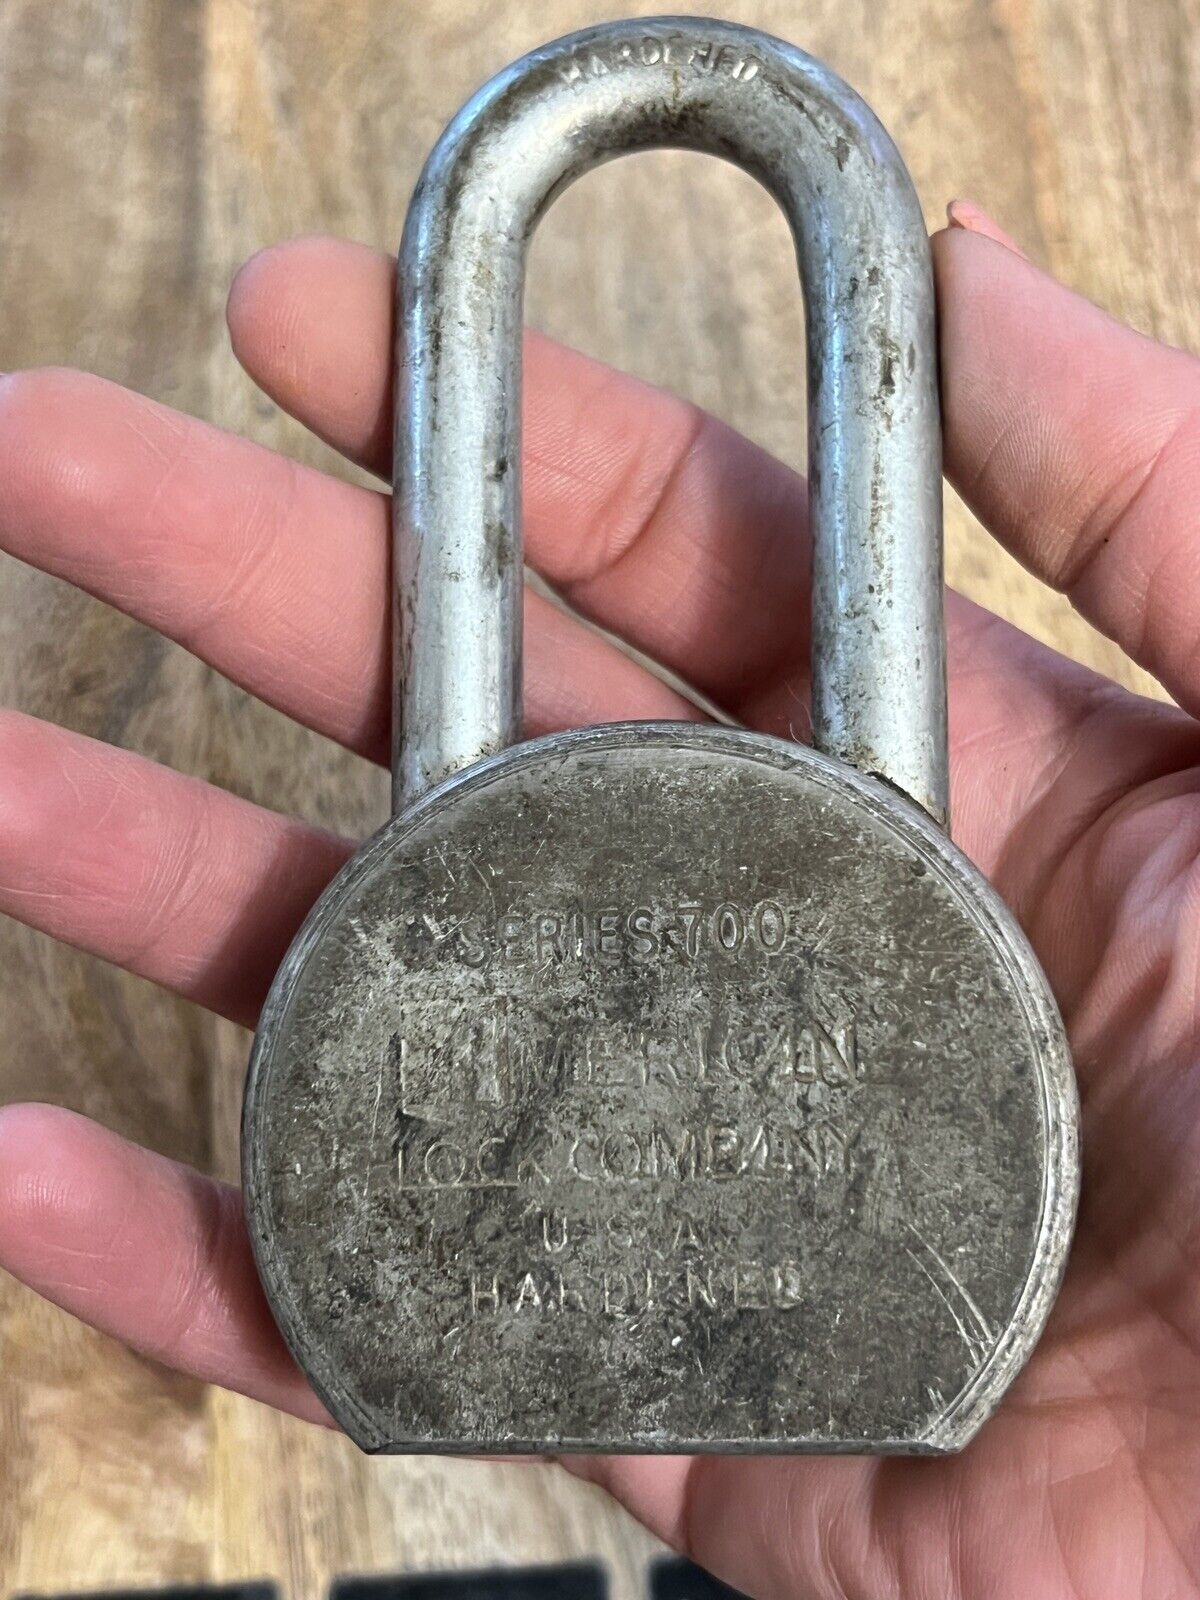 Vintage Old American Series 700 UPRR Padlock Lock No Key